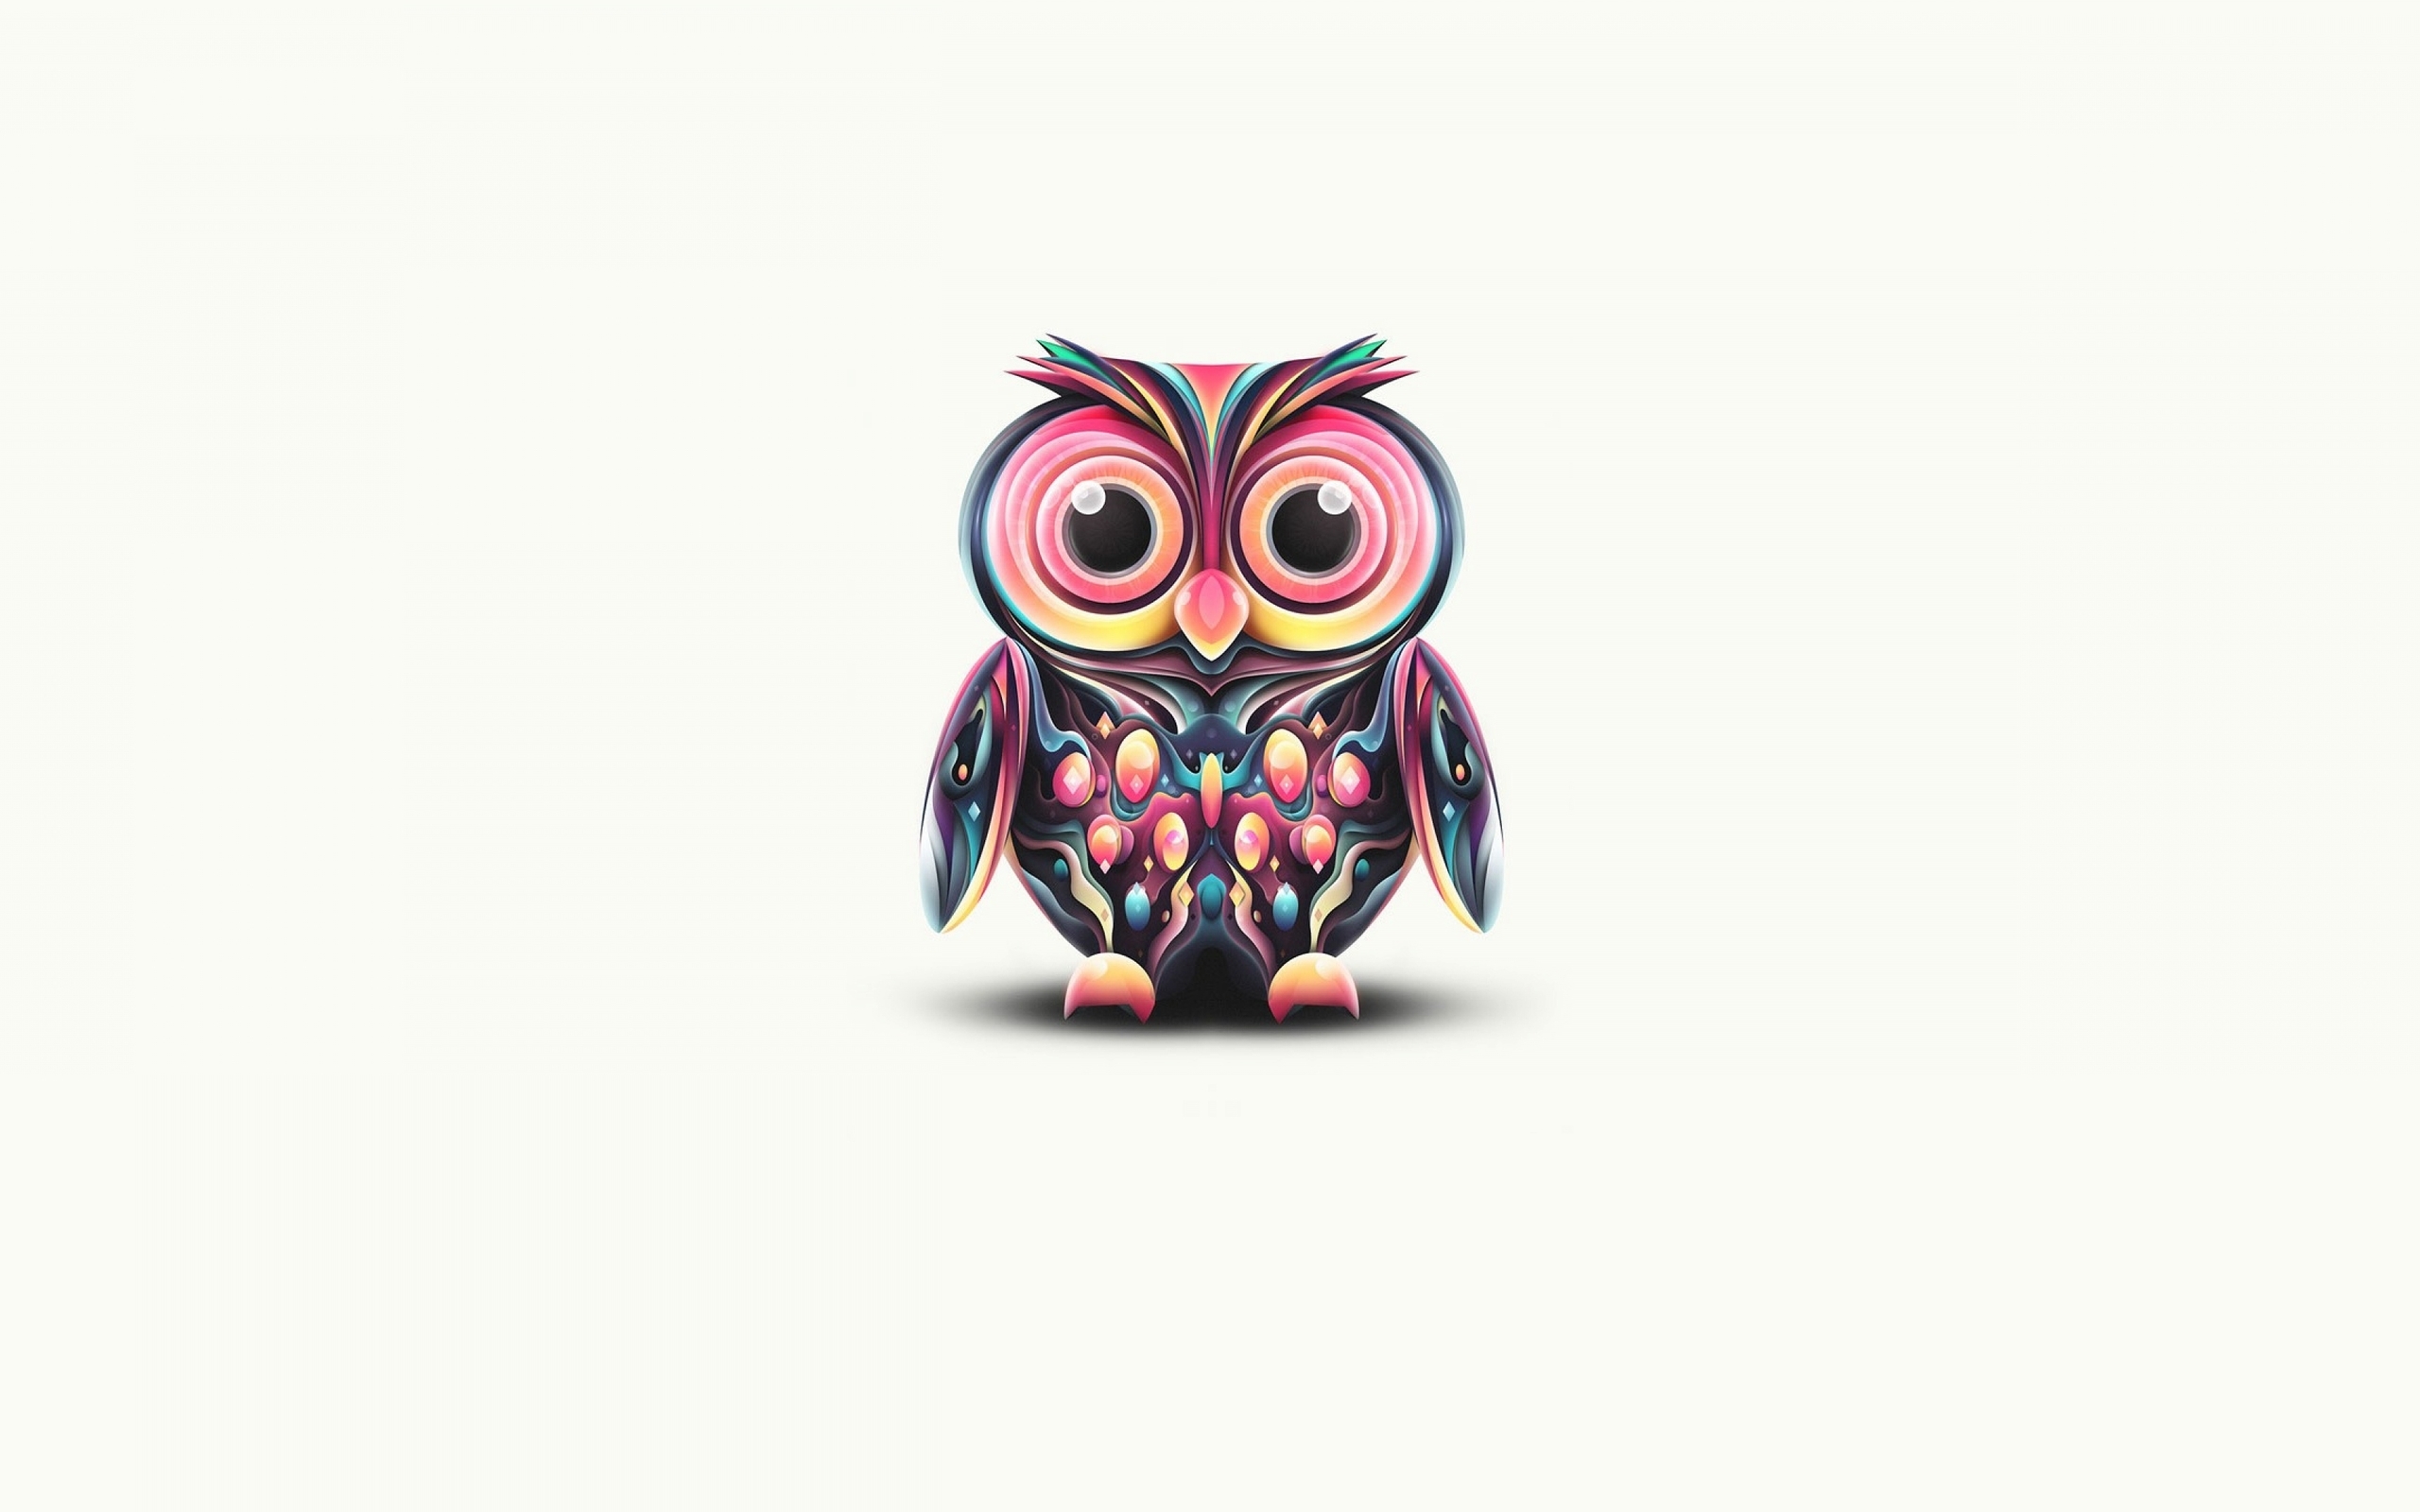 Image: Owl, eyes, shadow, white background, minimalism